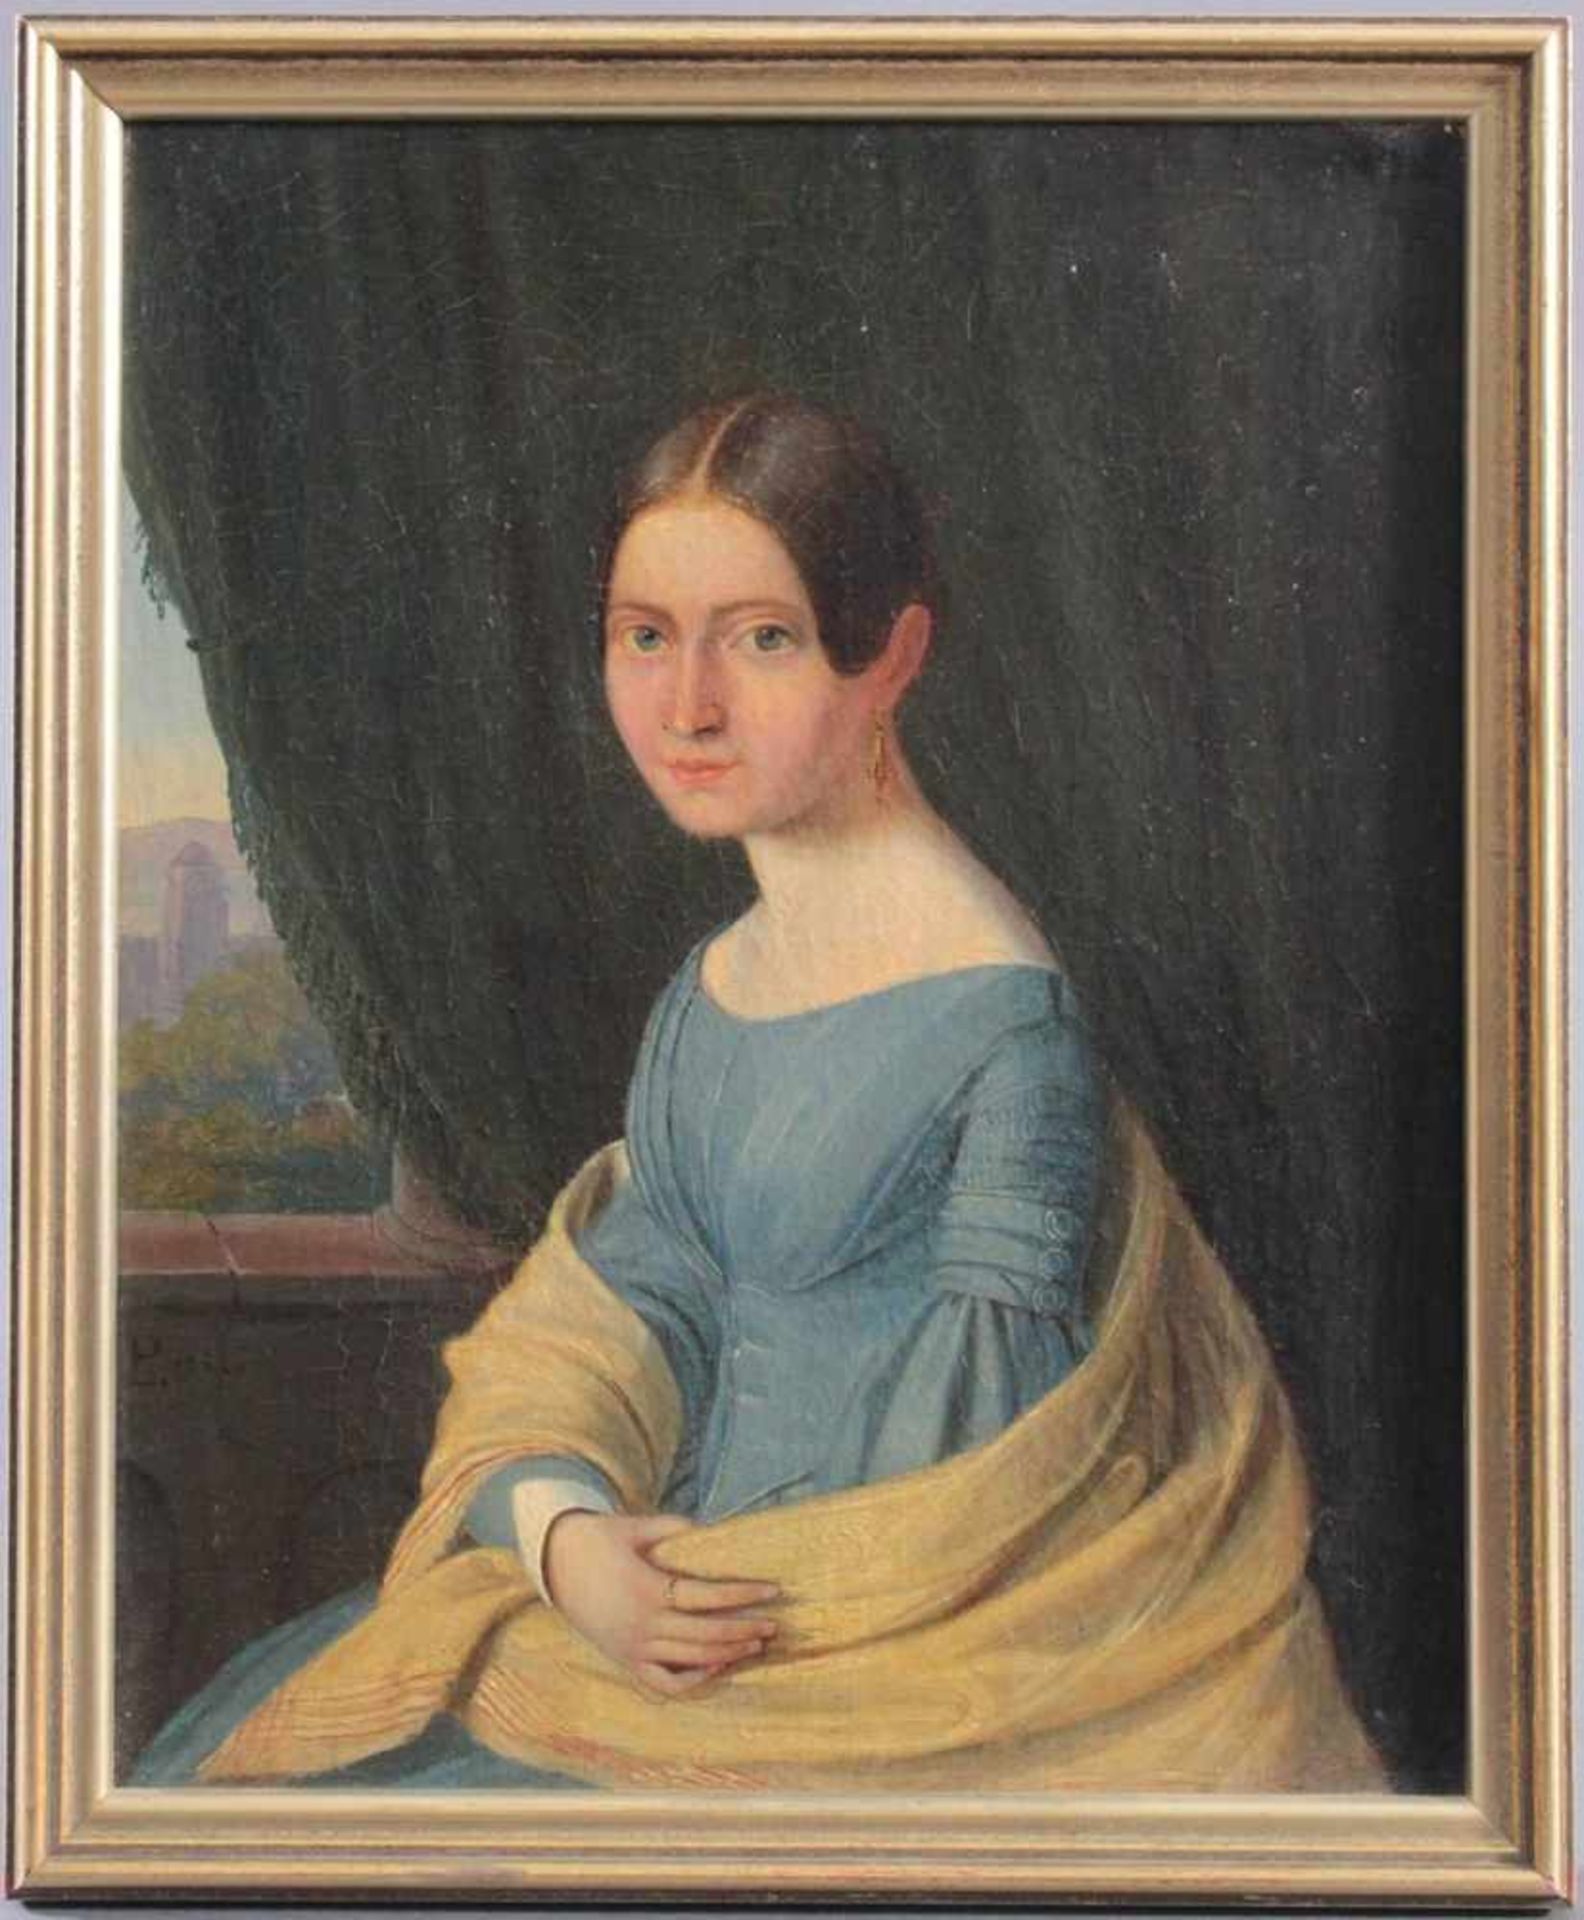 Frauenbildnis des 19. JahrhundertsÖl auf Leinwand, junge Frau mit blauem Kleid, doubliert, links